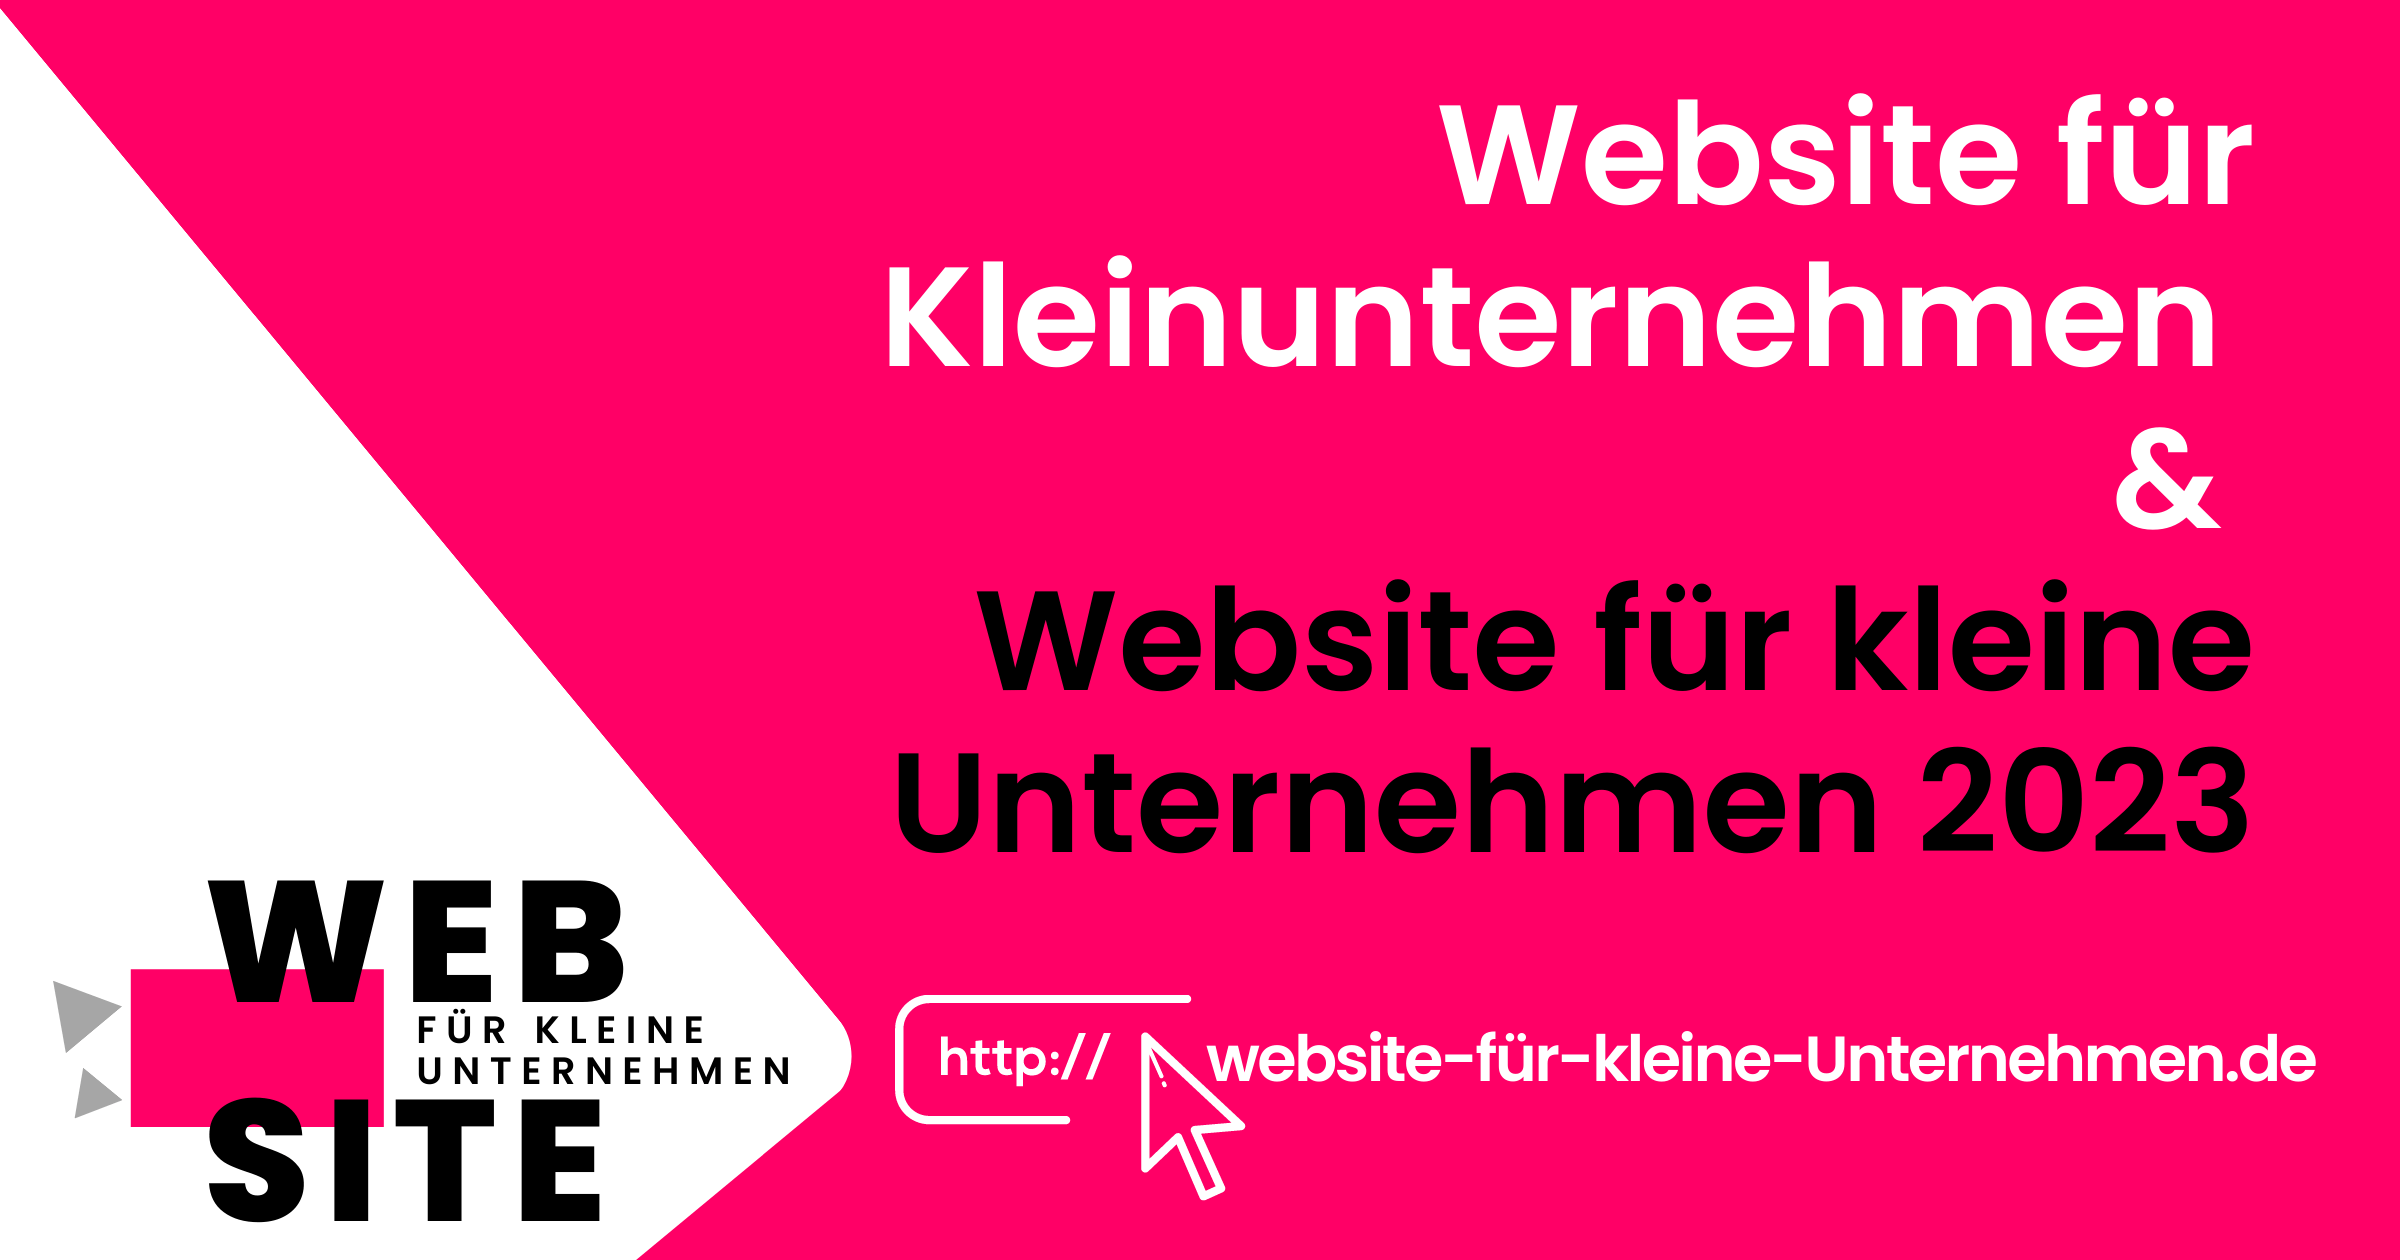 Website für Kleinunternehmen und Website für kleine Unternehmen - featured image